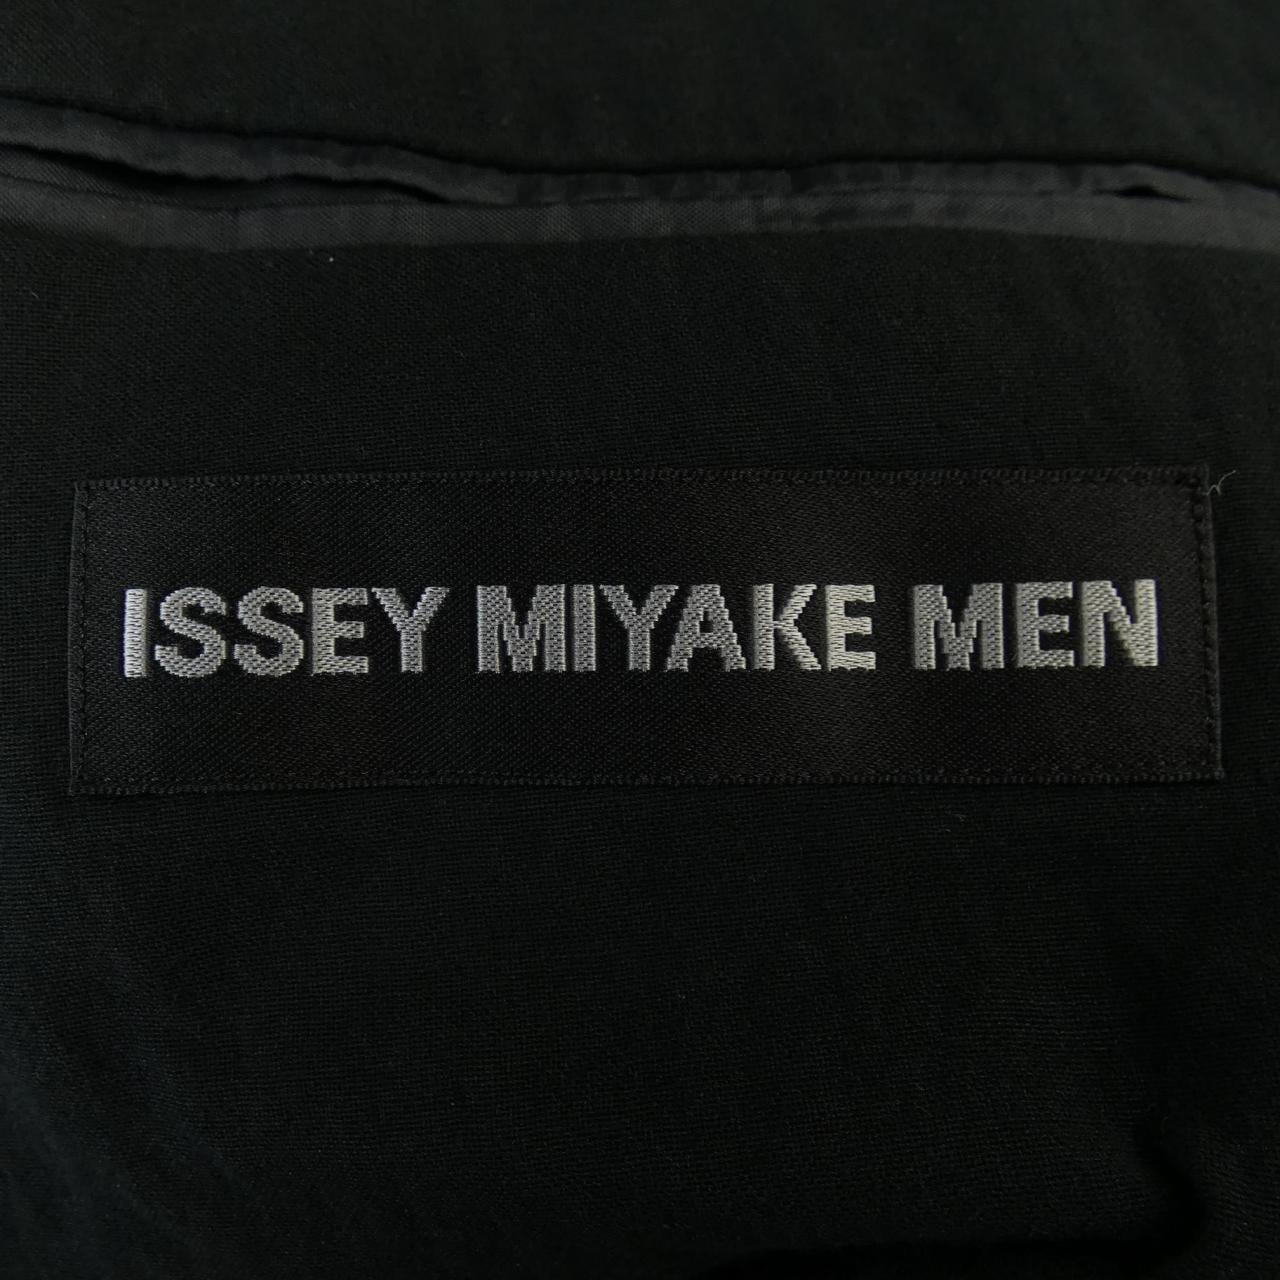 ISSEY MIYAKE MEN jacket